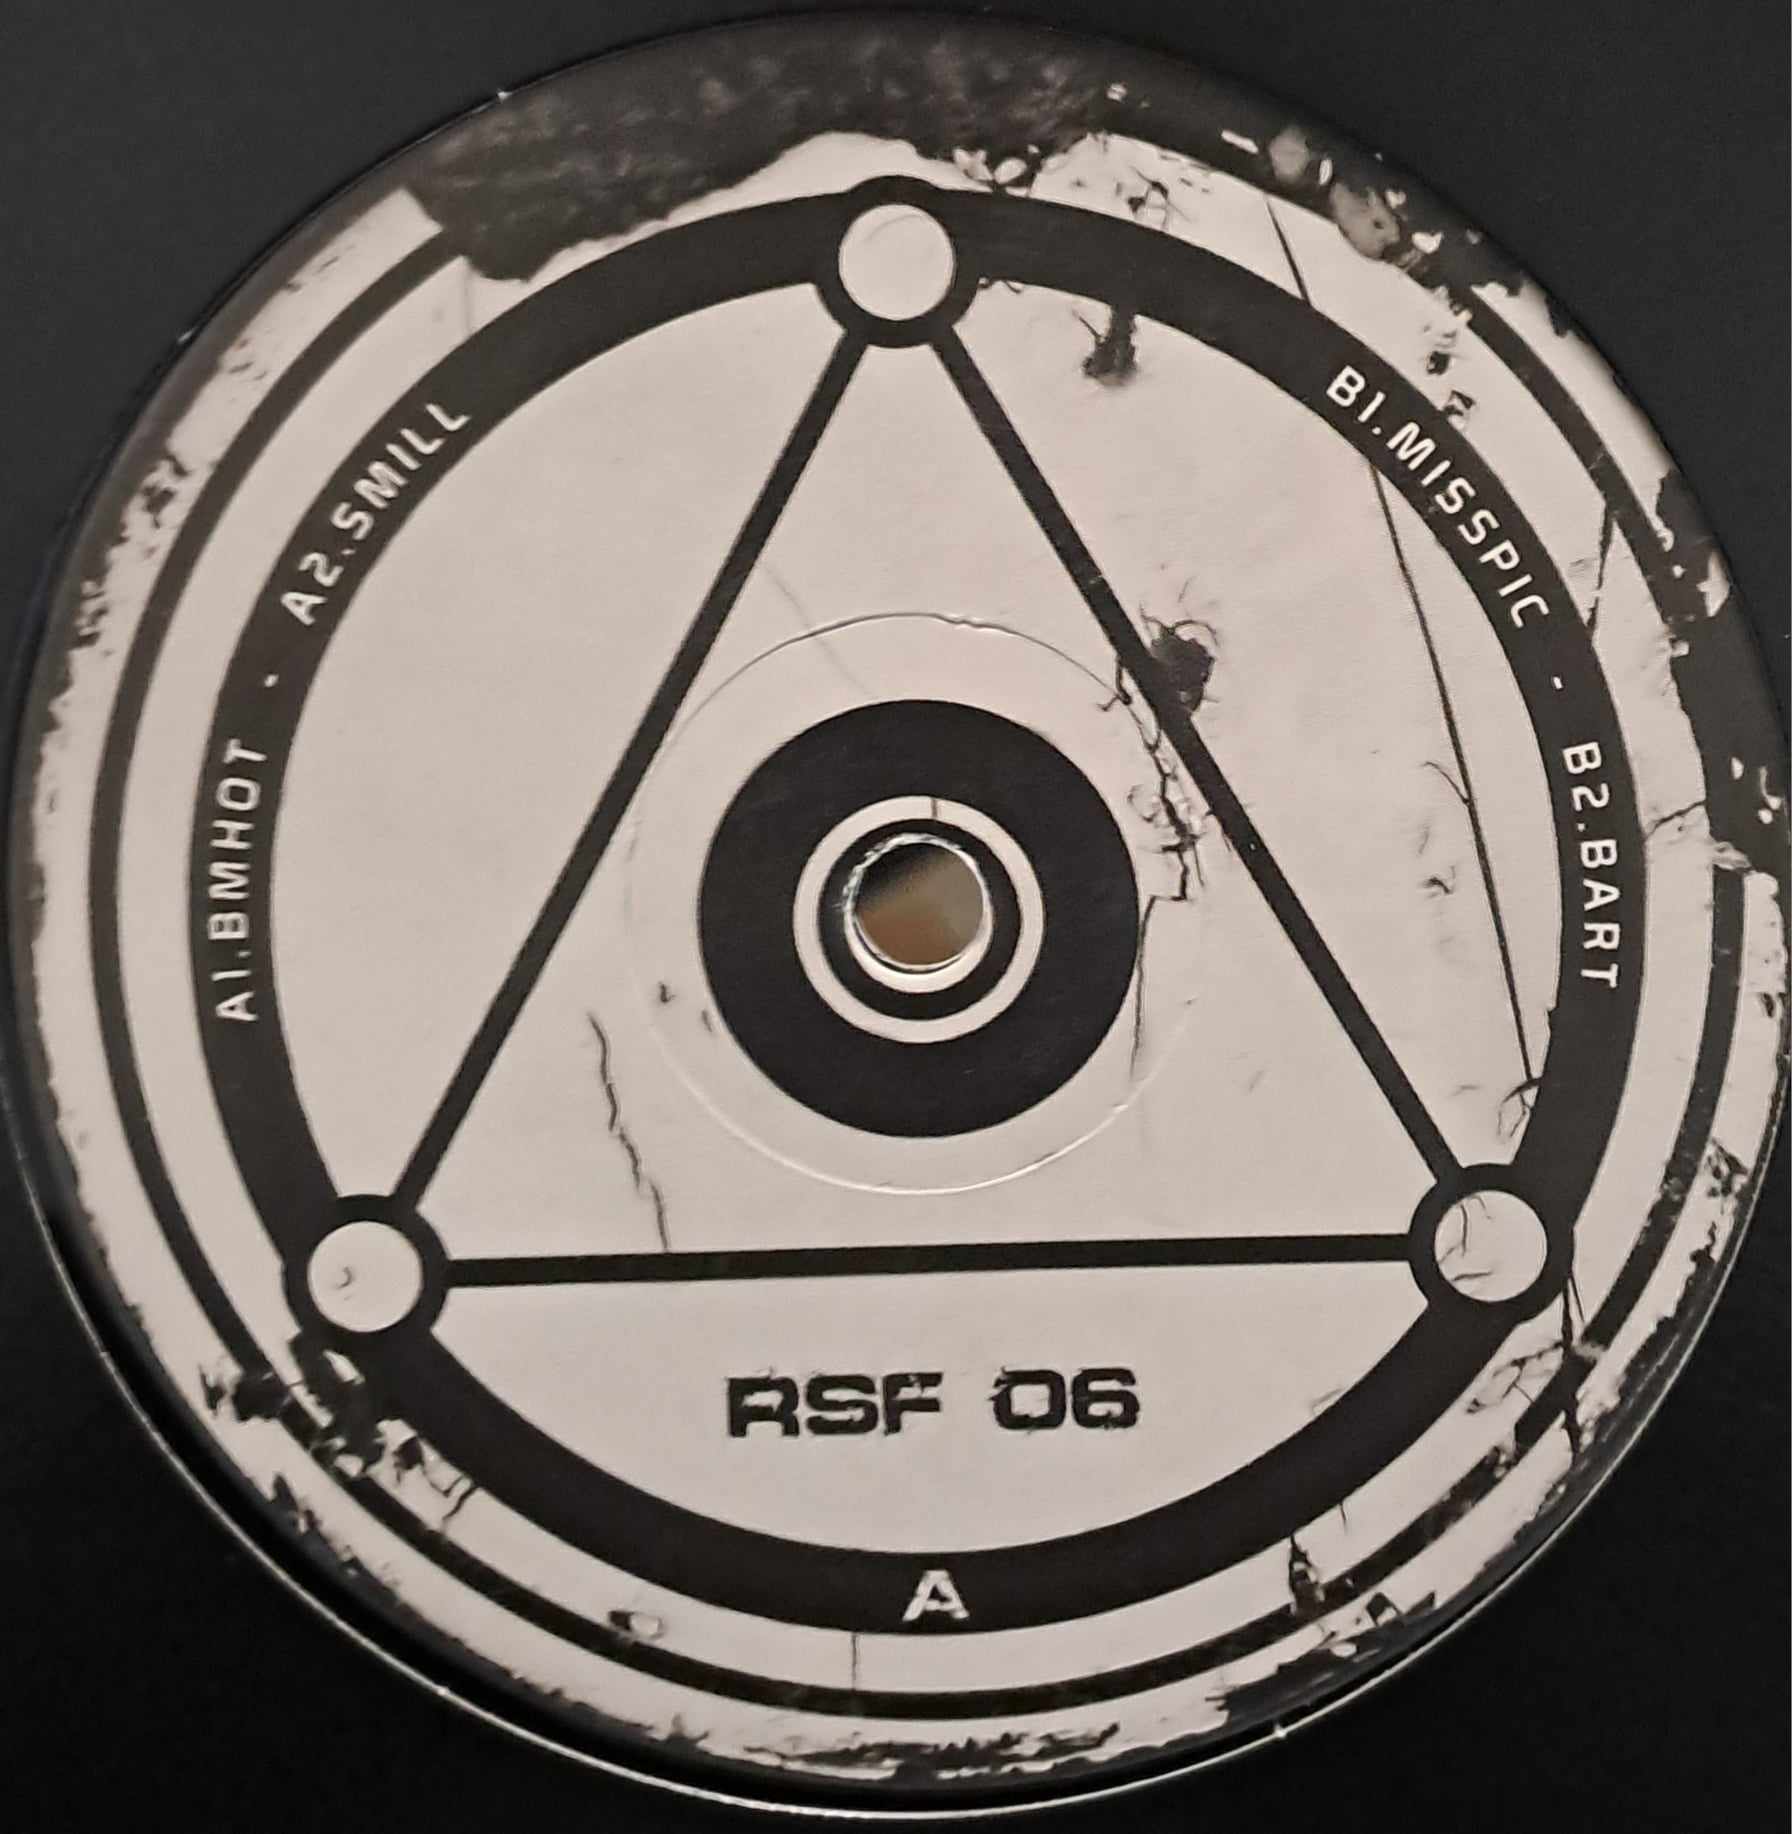 RSF 06 RP (dernières copies en stock) - vinyle freetekno